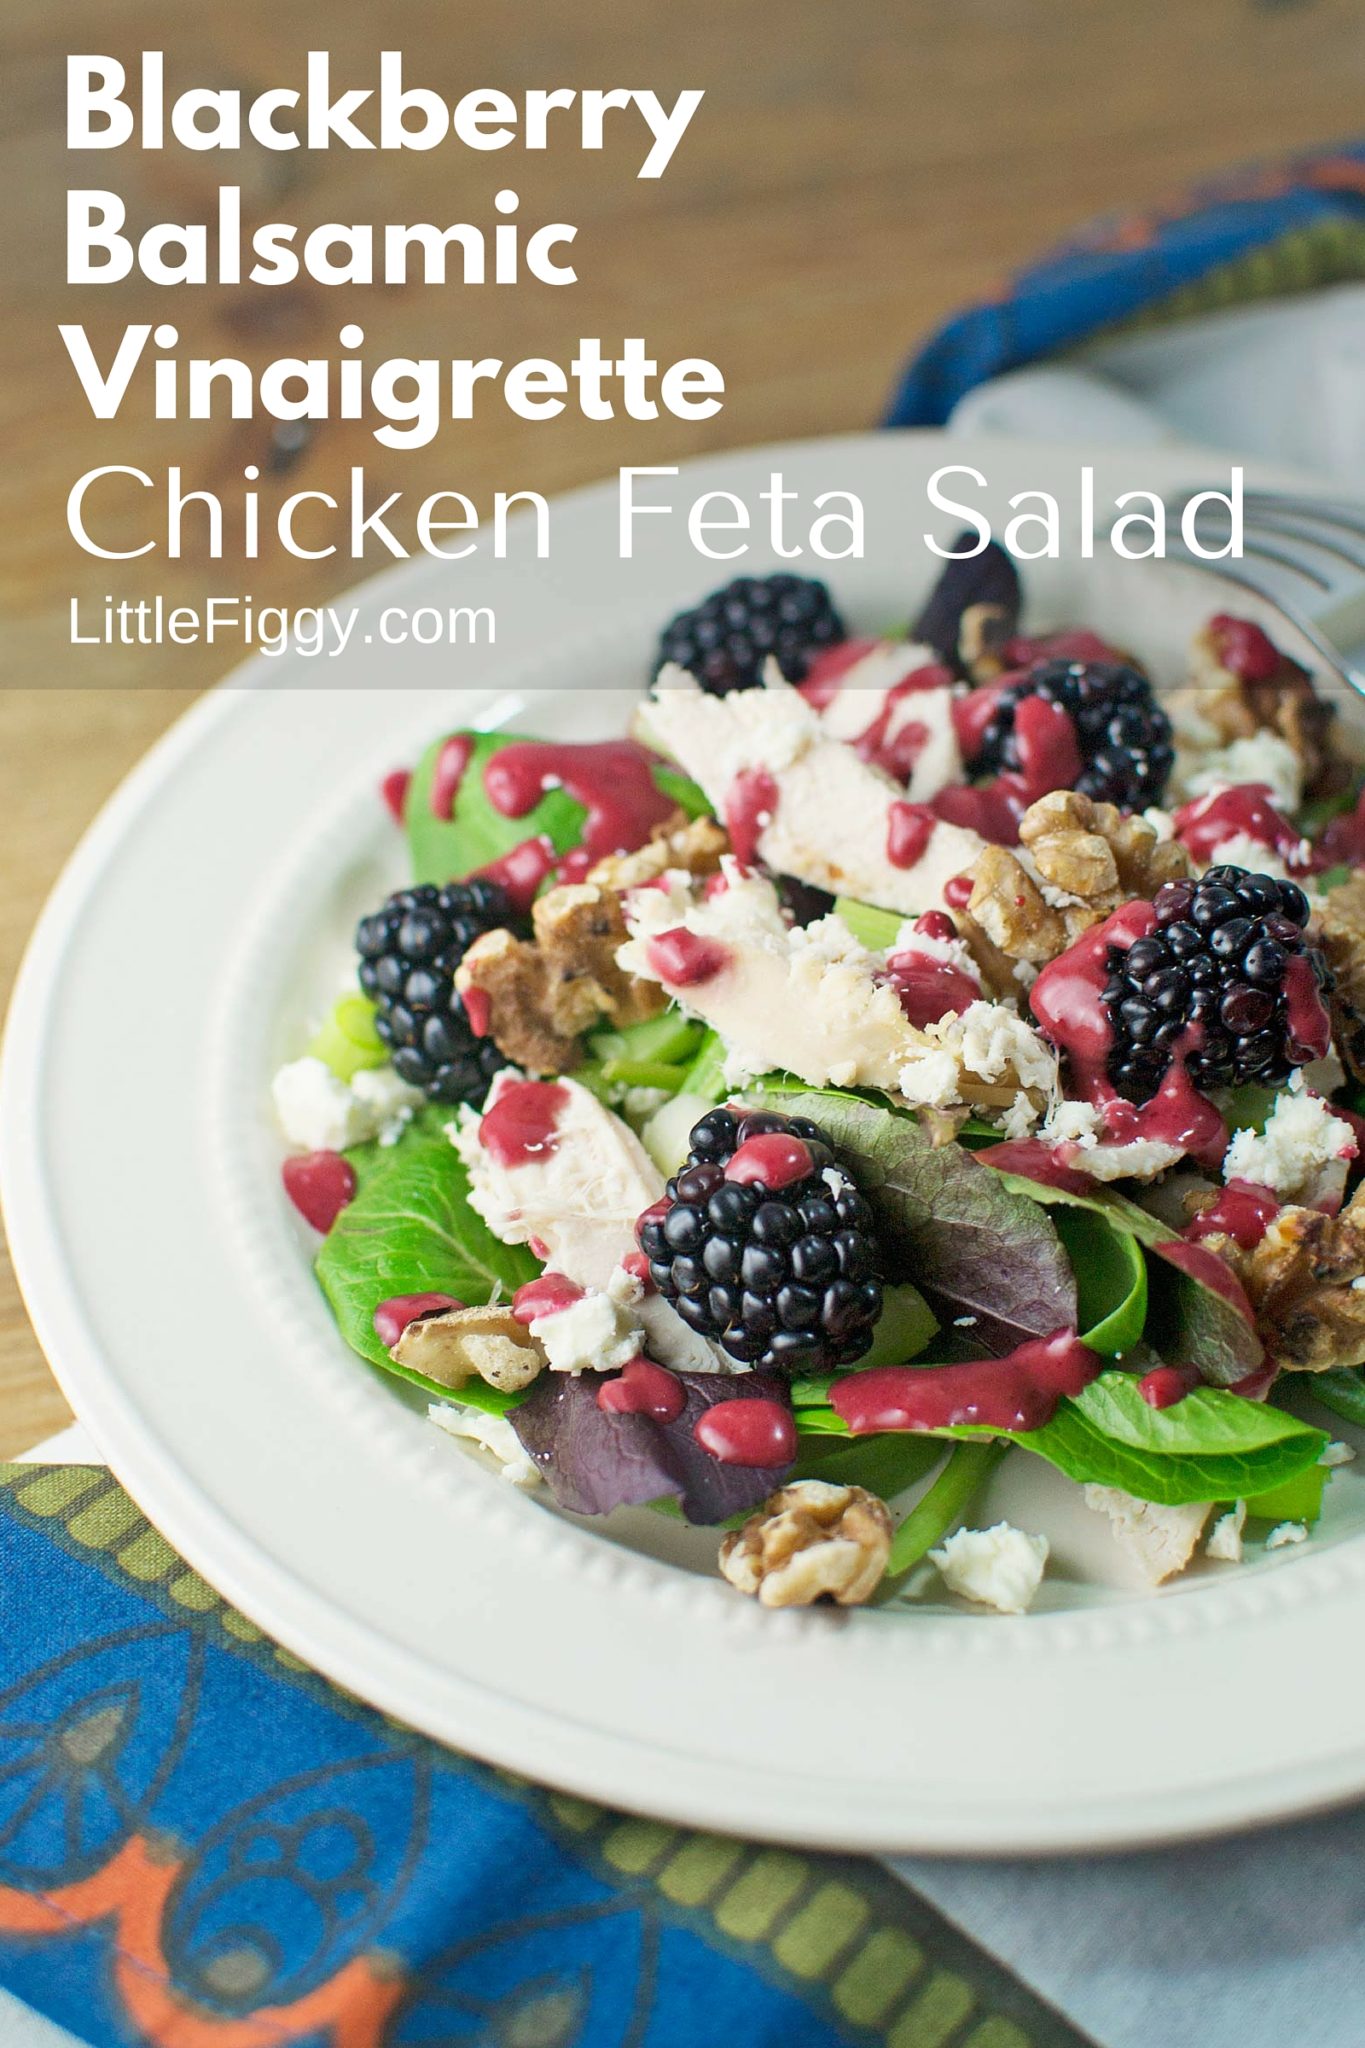 Blackberry Balsamic Vinaigrette with Chicken Feta Salad - @LittleFiggyFood - #Blackberries